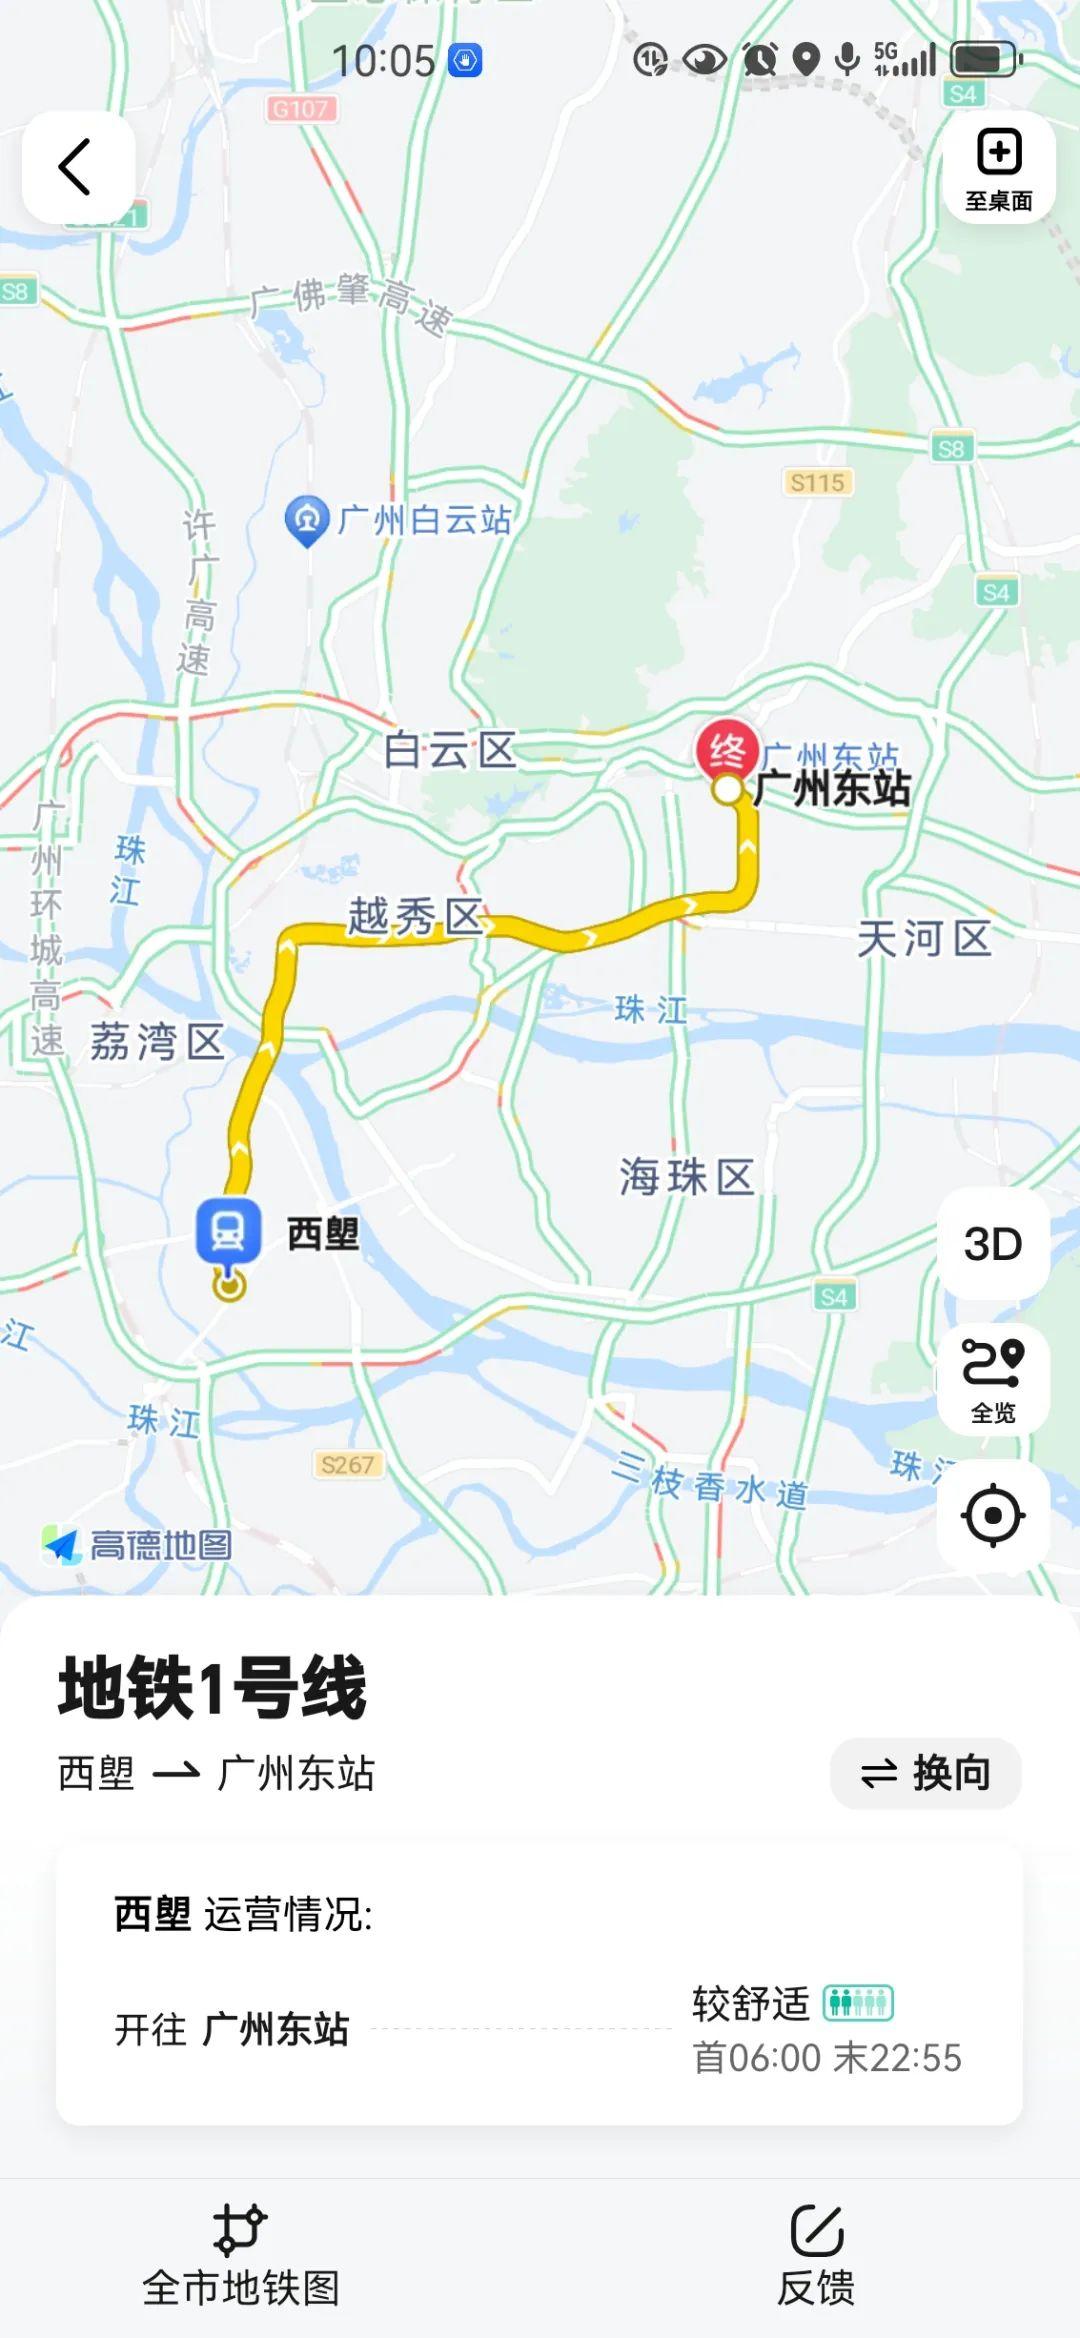 广州地铁1号线共设16站,其中8站是换乘站,成为一条换乘专线!